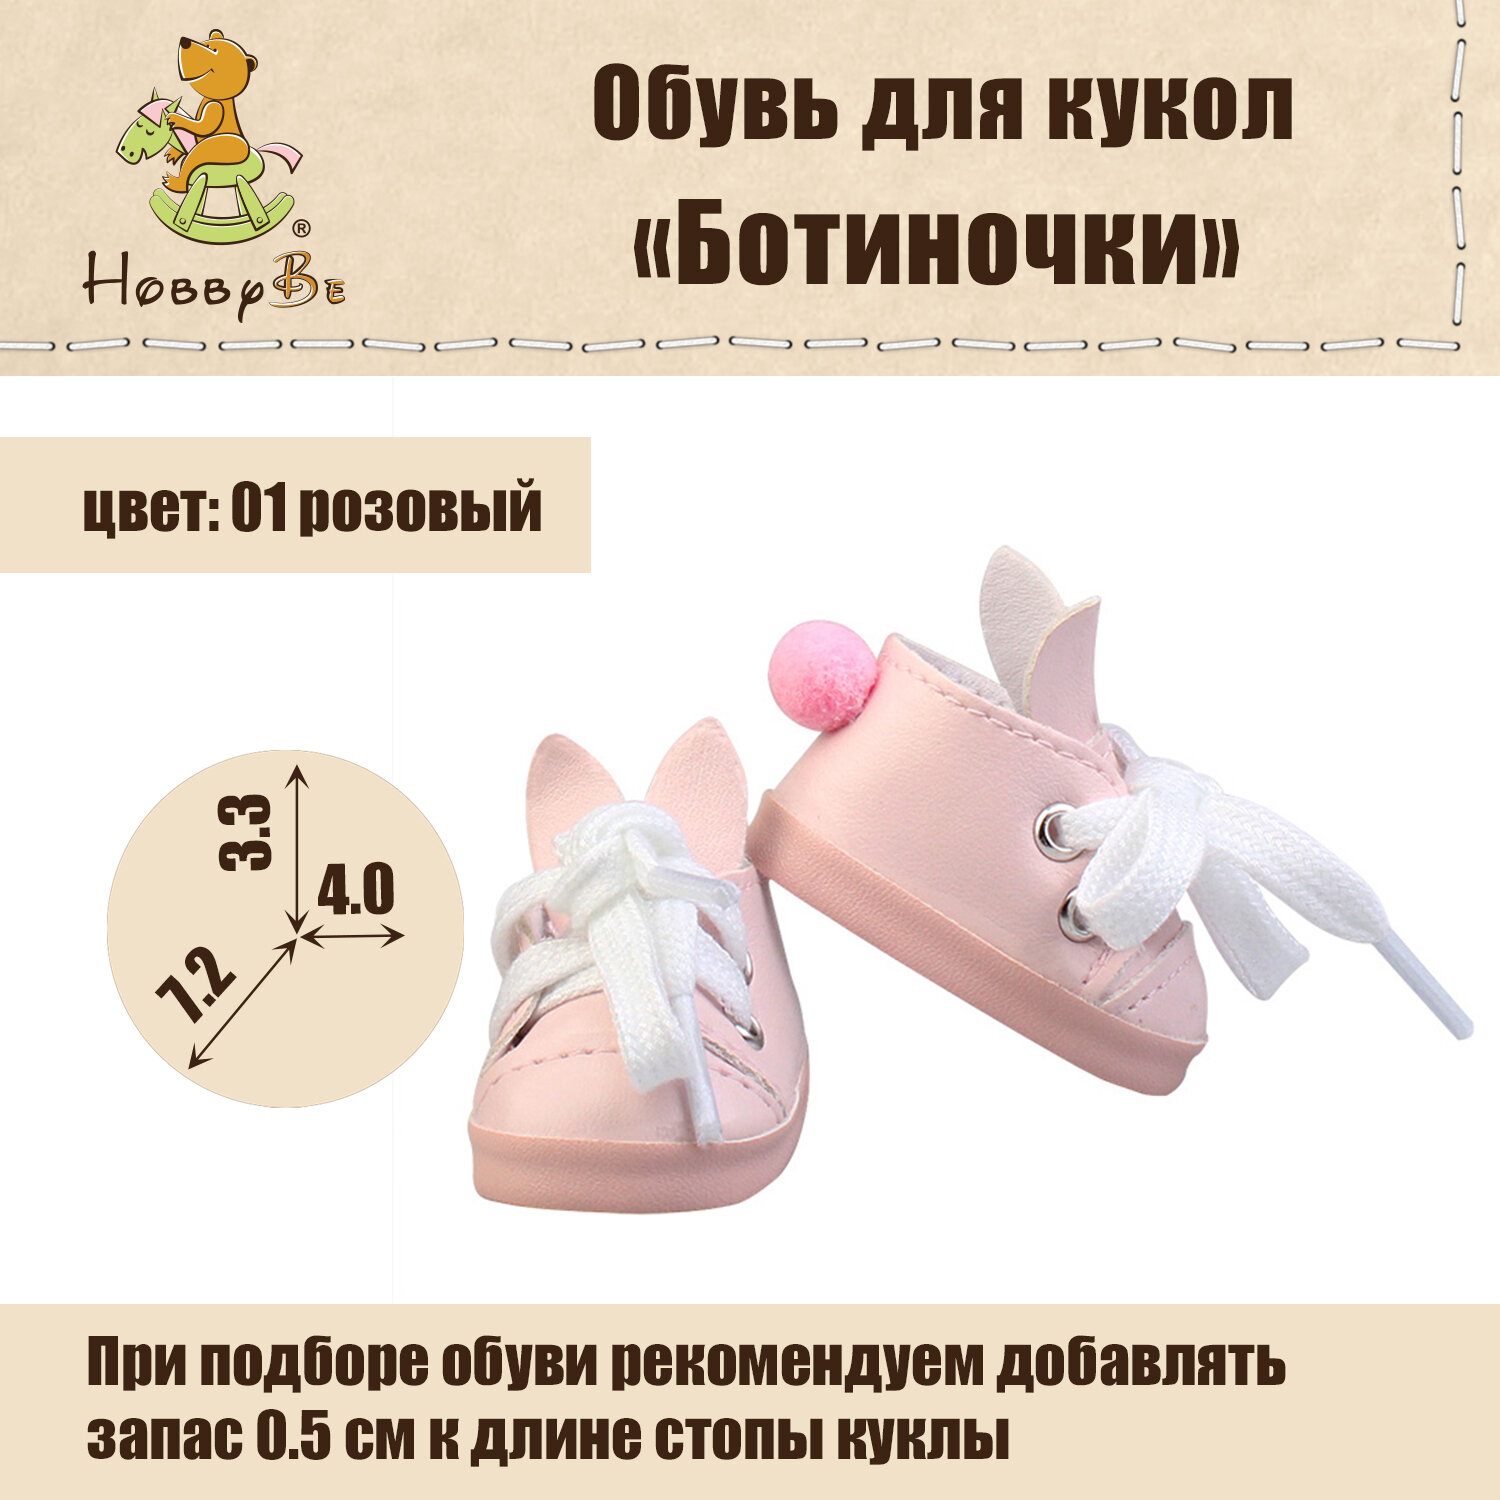 Обувь для кукол "HobbyBe" KBG-3 аксессуары "Ботиночки" 7 см 01 розовый